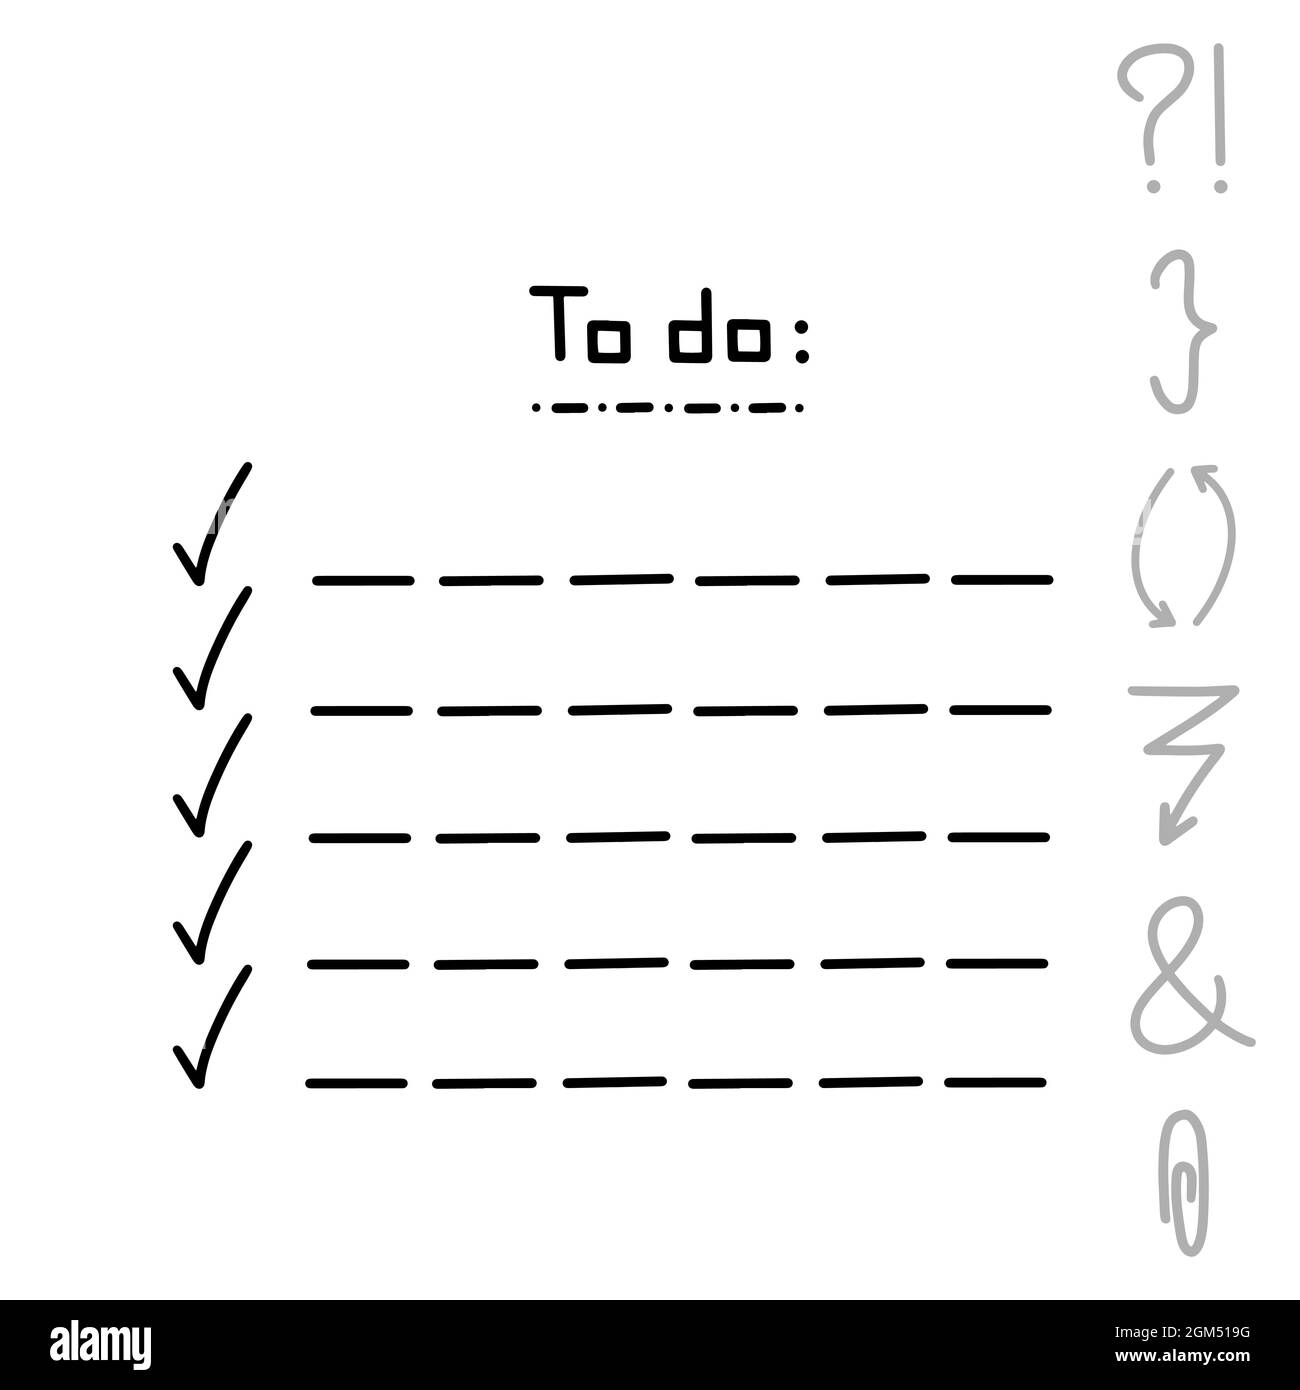 Jolie main écrit à faire liste lettrage curseur illustration vectorielle isolée sur fond blanc. Motif géométrique noir avec question esperluette Illustration de Vecteur